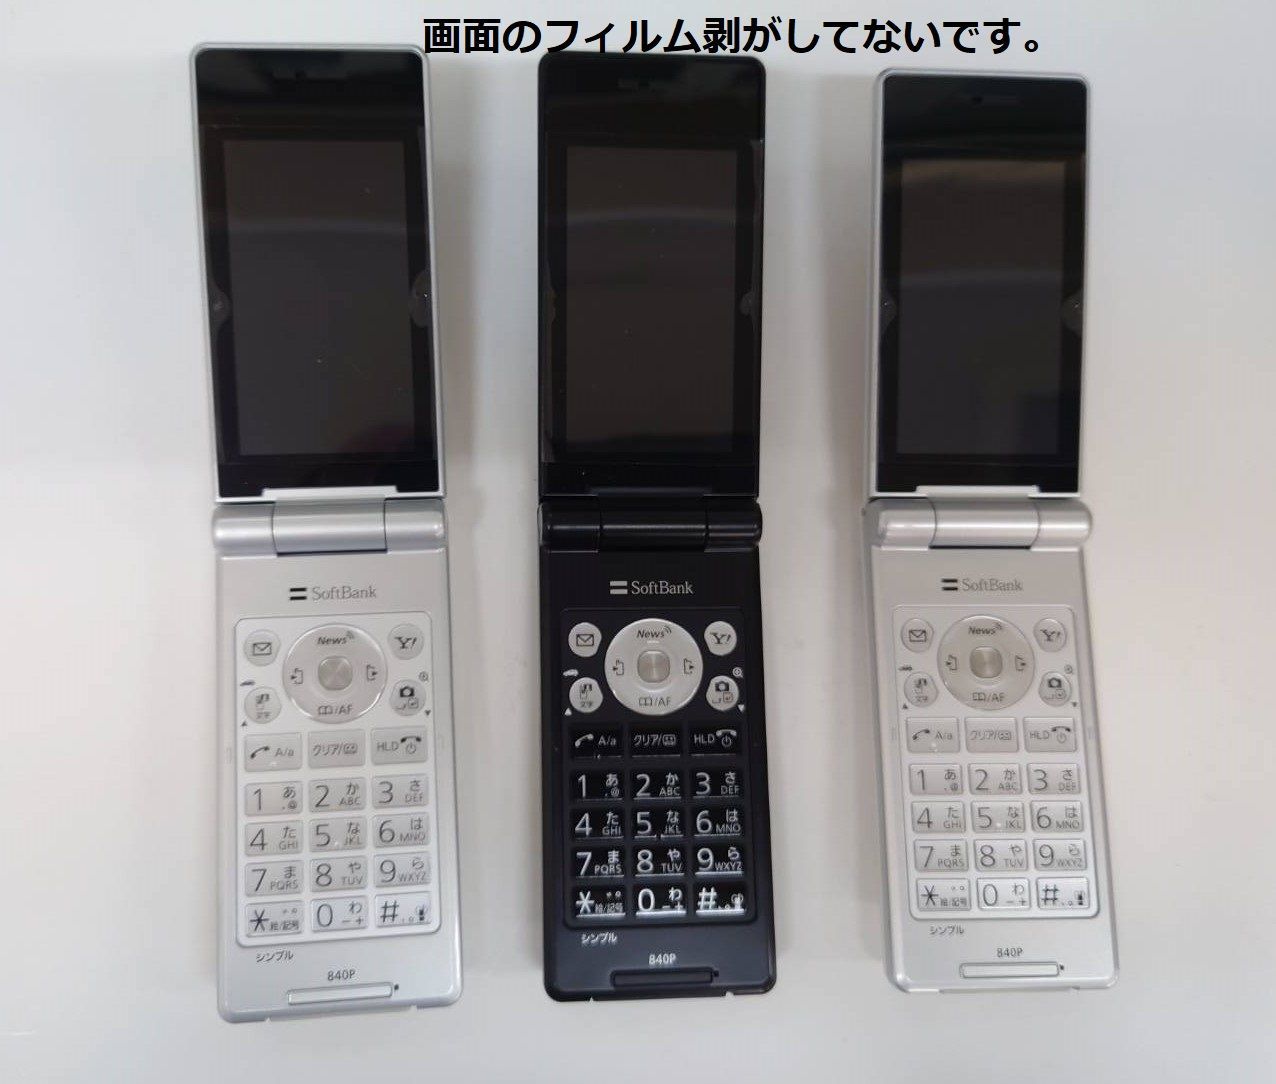 ソフトバンク ガラケー 840P - 携帯電話